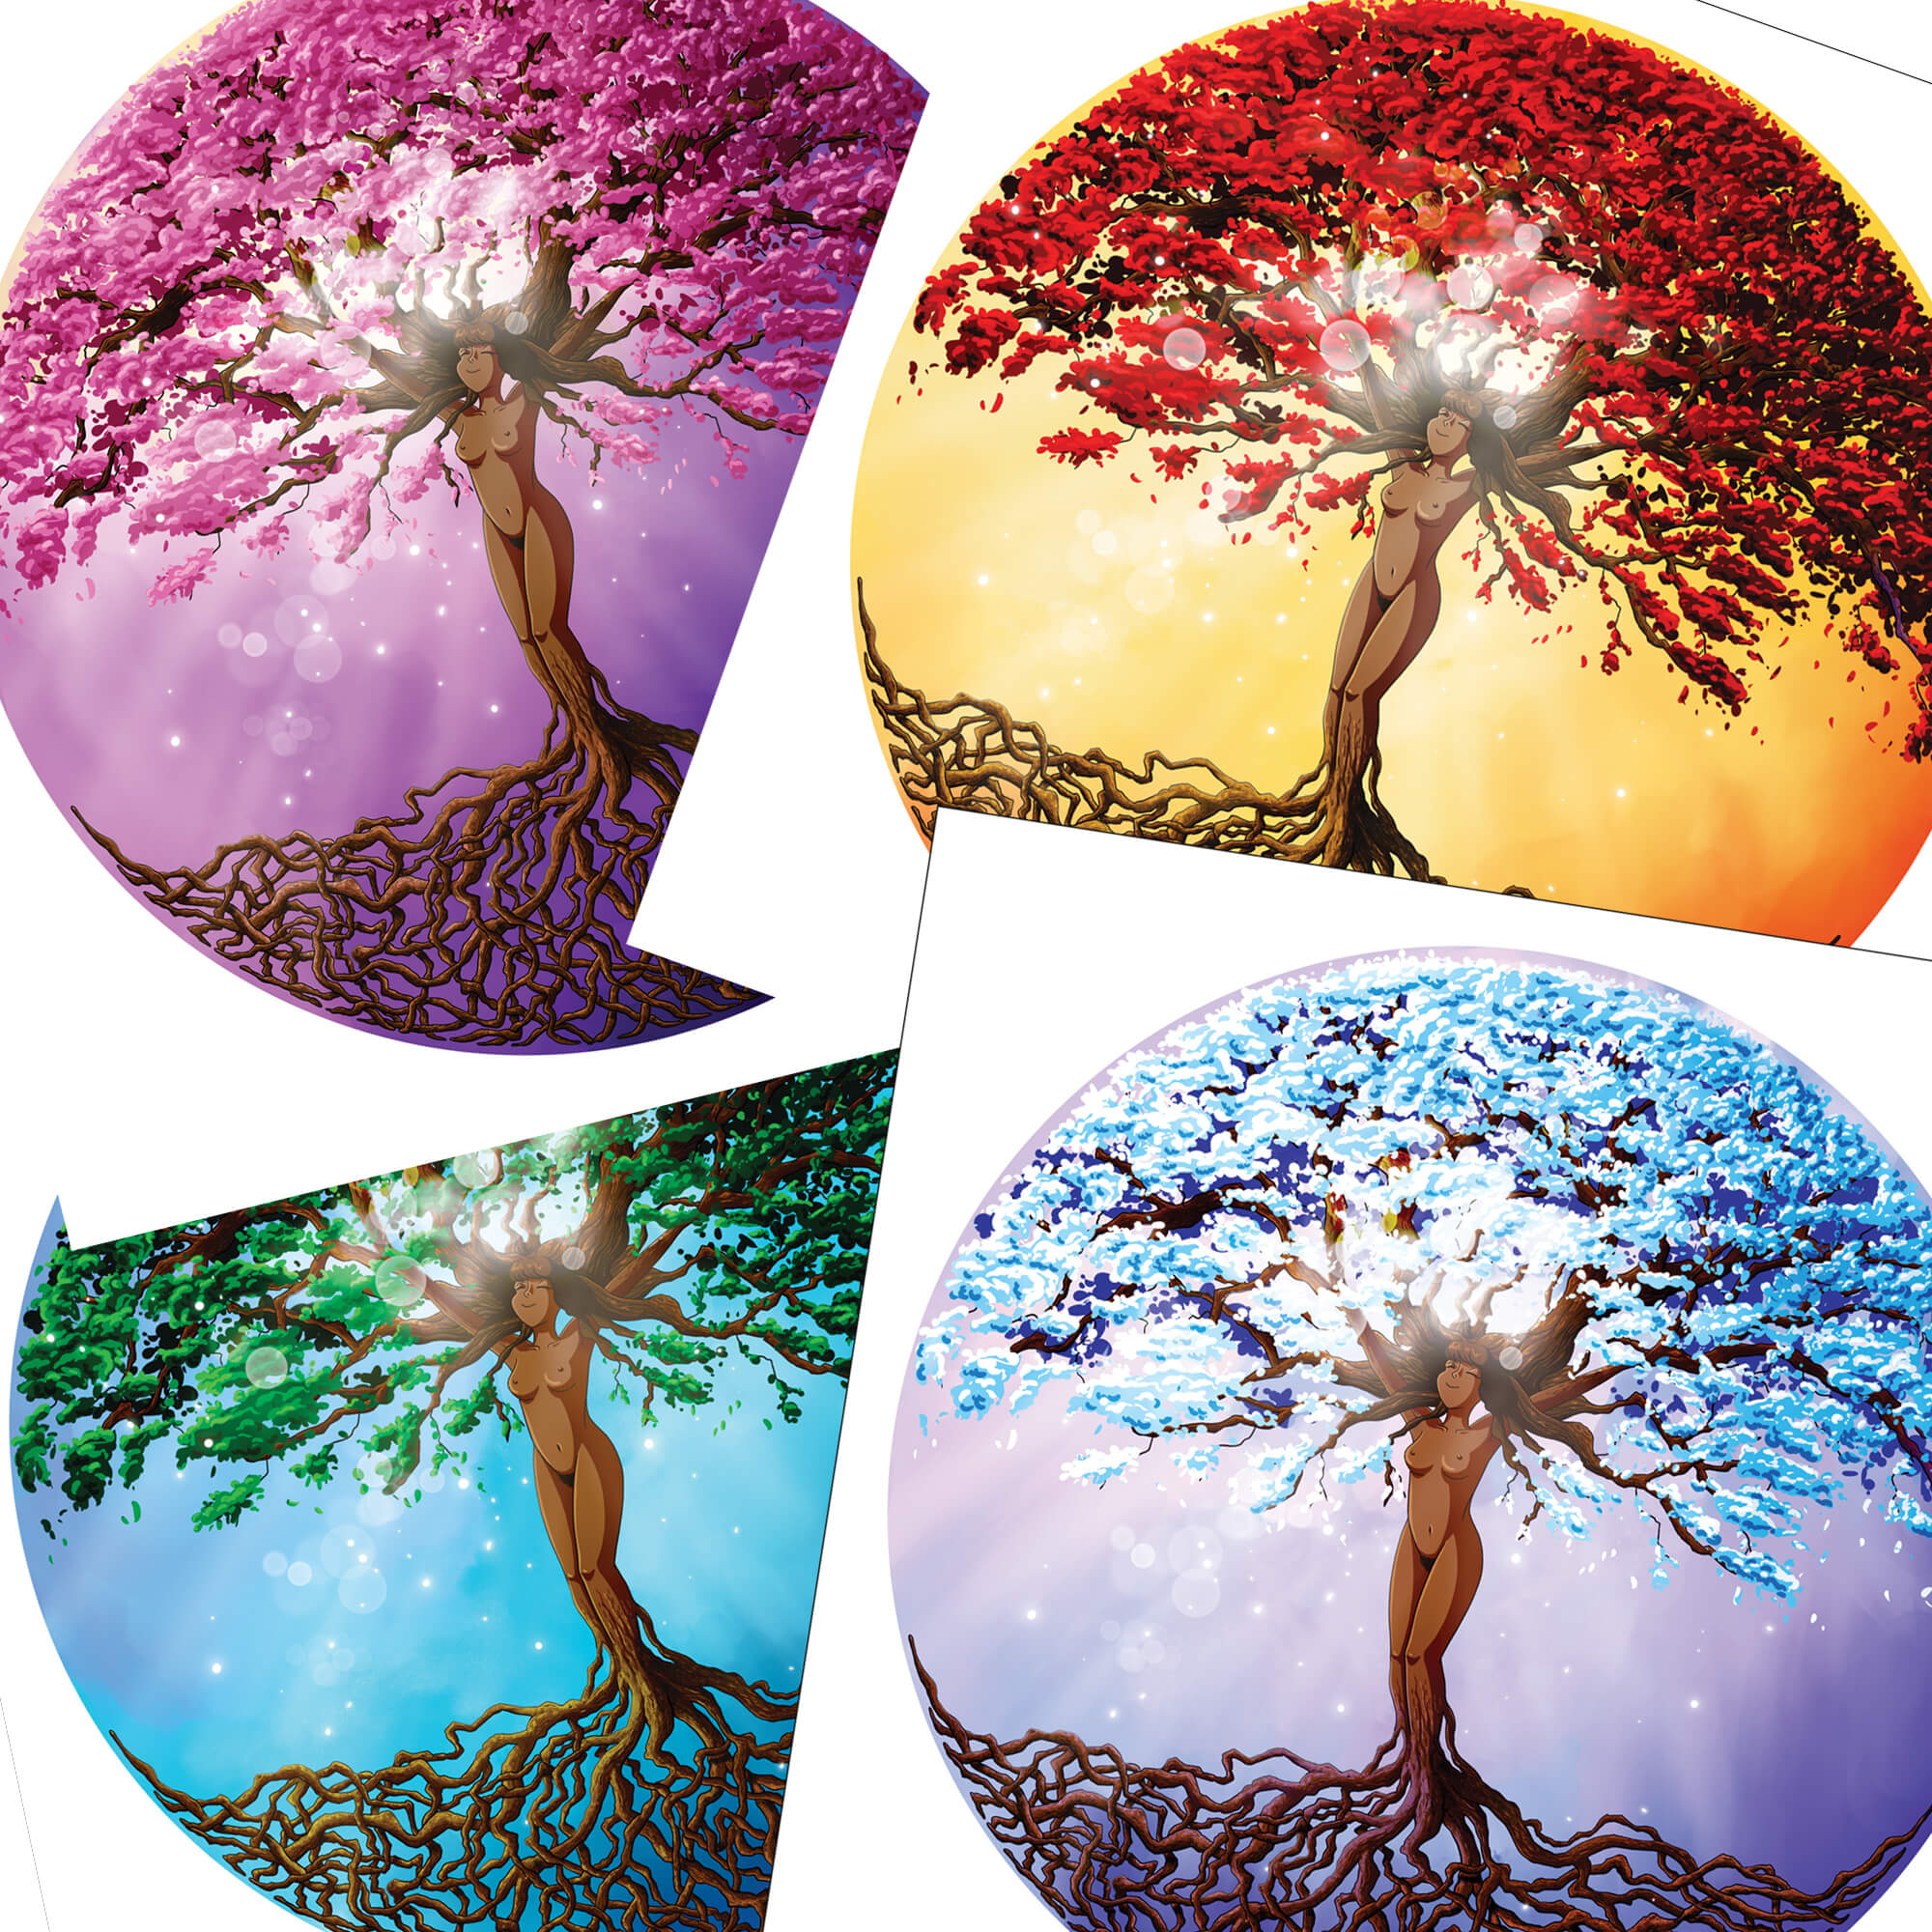 Quatre dessin représentant une femme-arbre de vie avec des floraisons selon les quatre saisons.